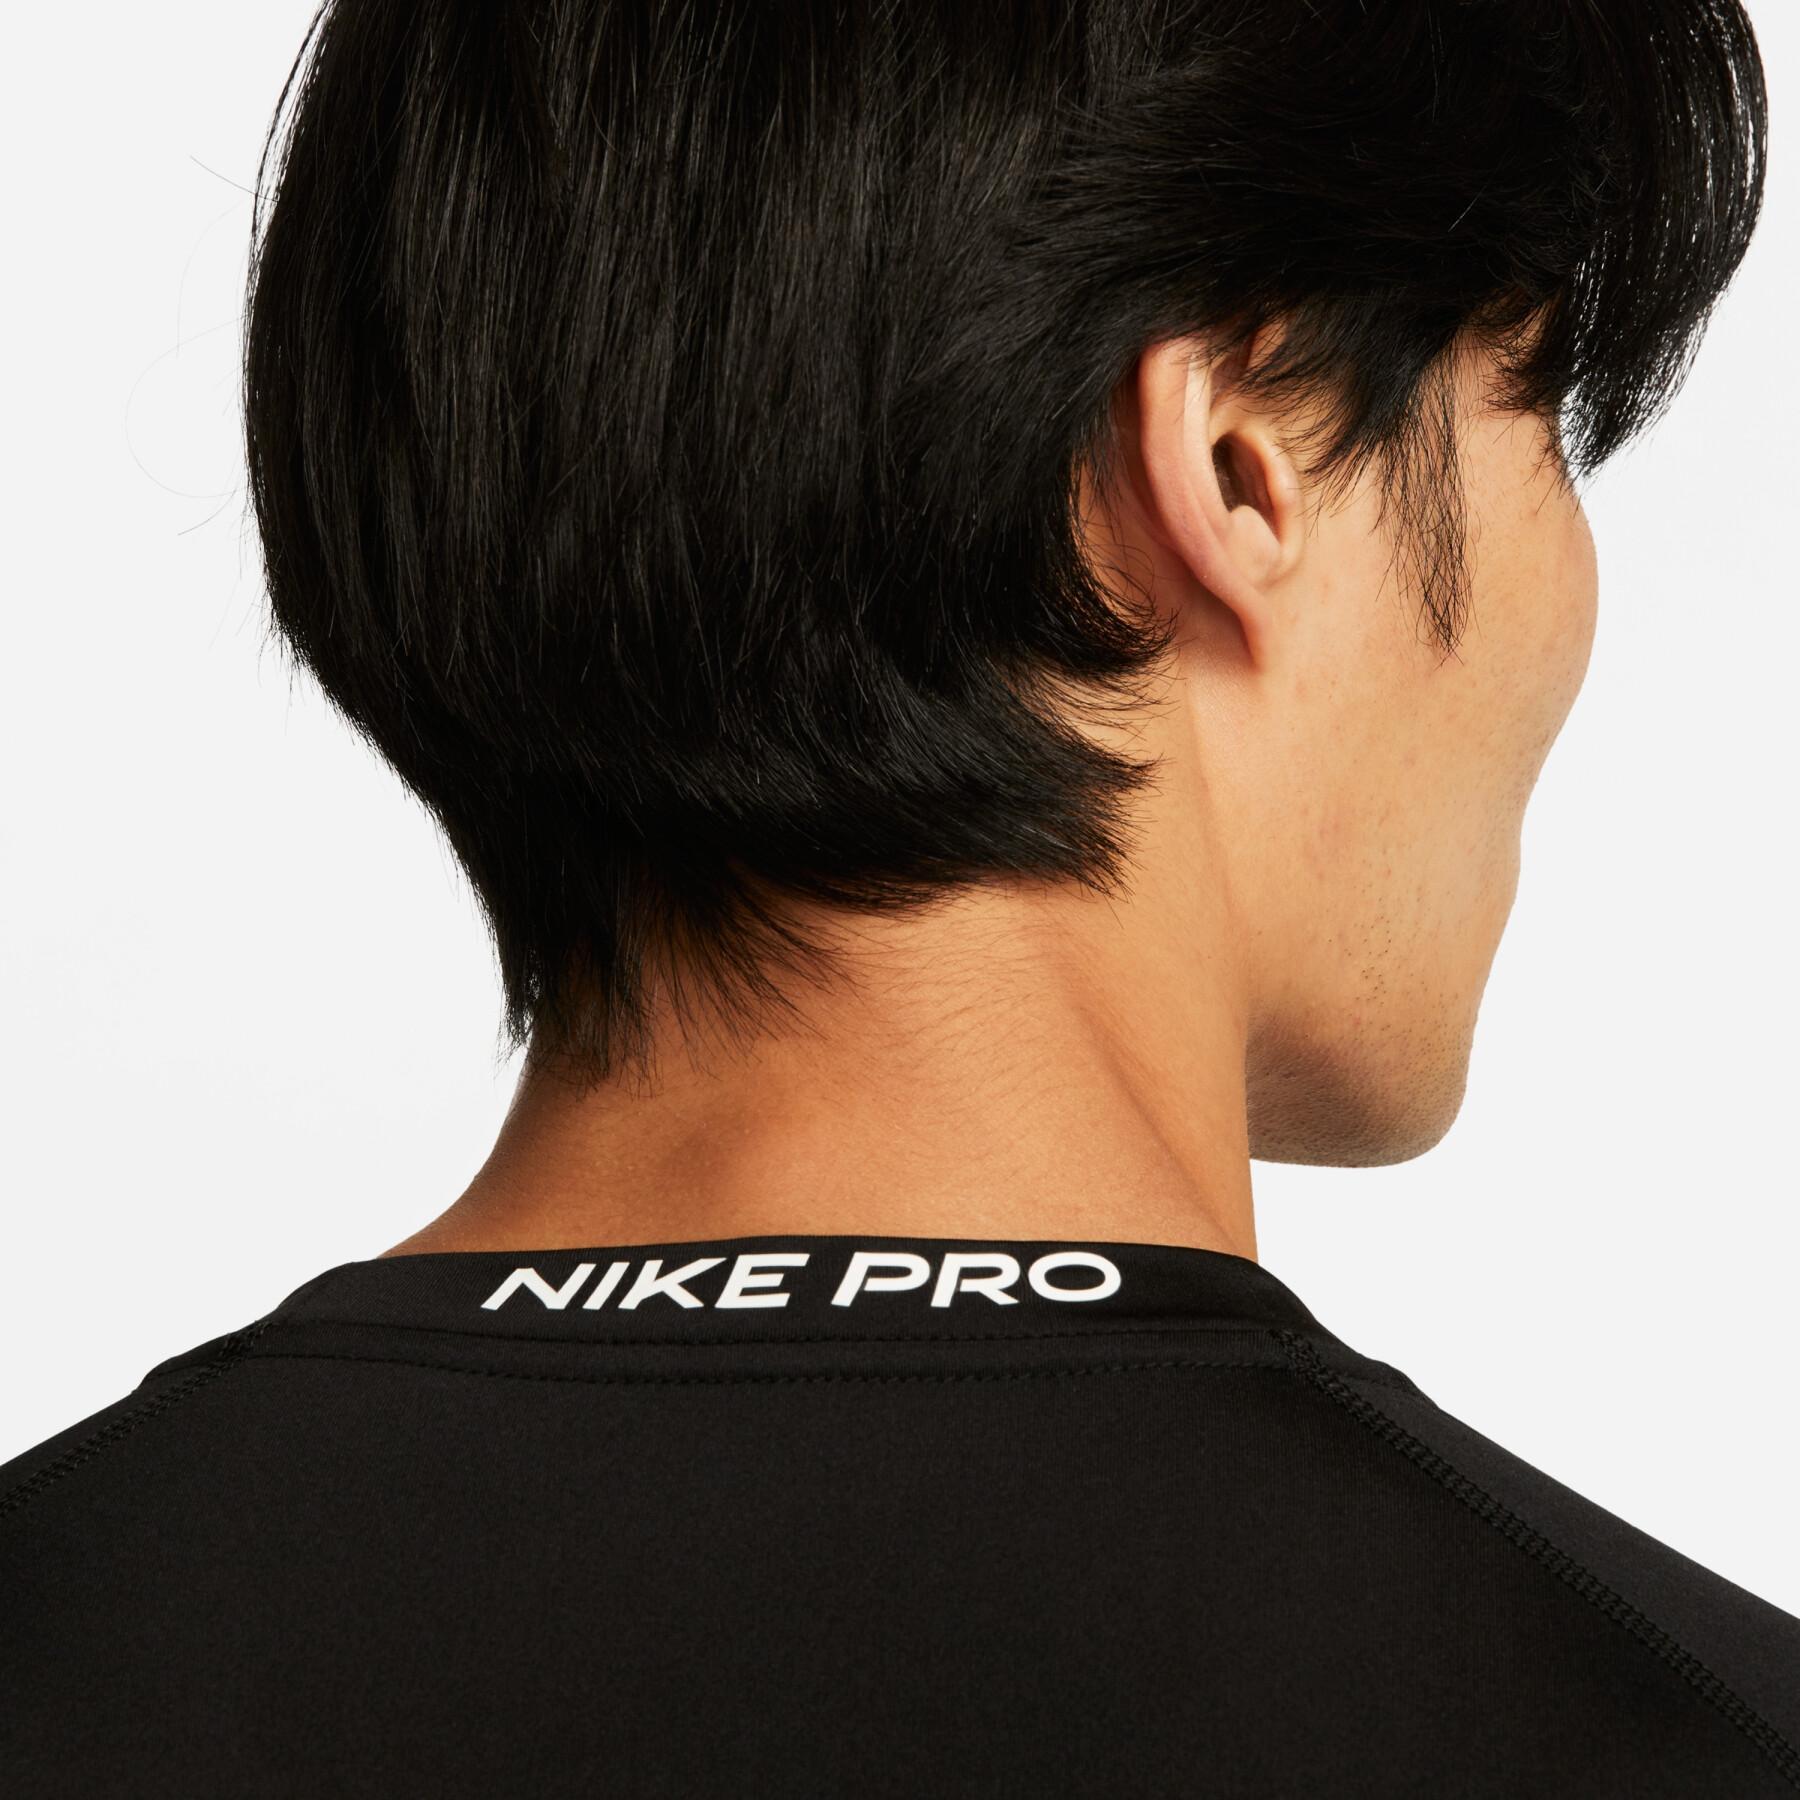 Strakke jersey met lange mouwen Nike Pro Dri-FIT